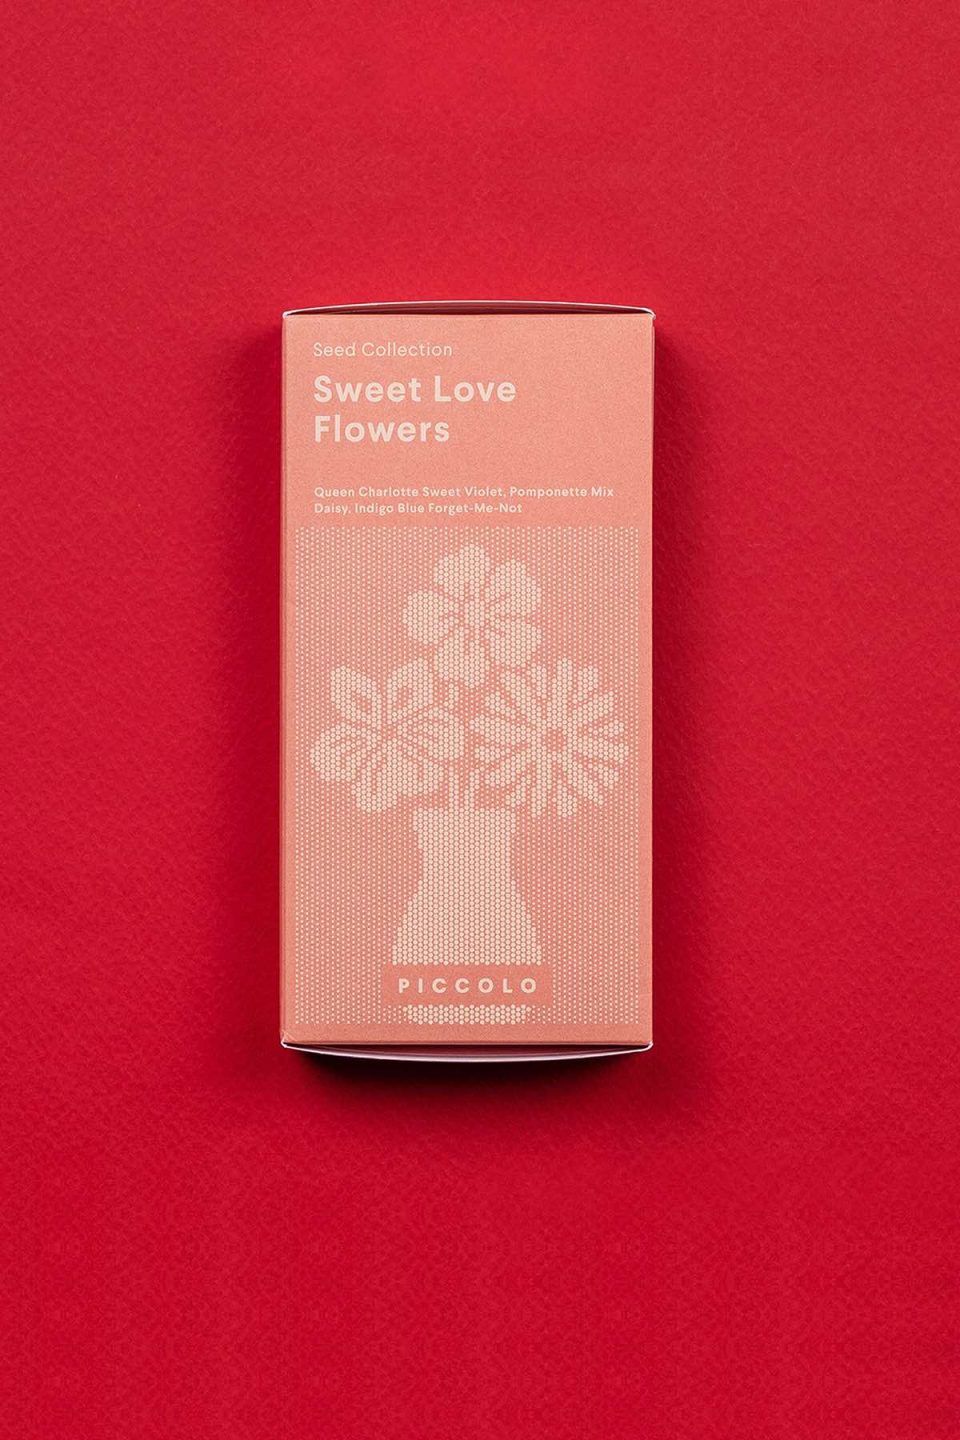 Crvena kutija seta sjemenki za sijanje cvijeća pod nazivom "Sweet love flowers" na crvenoj podlozi